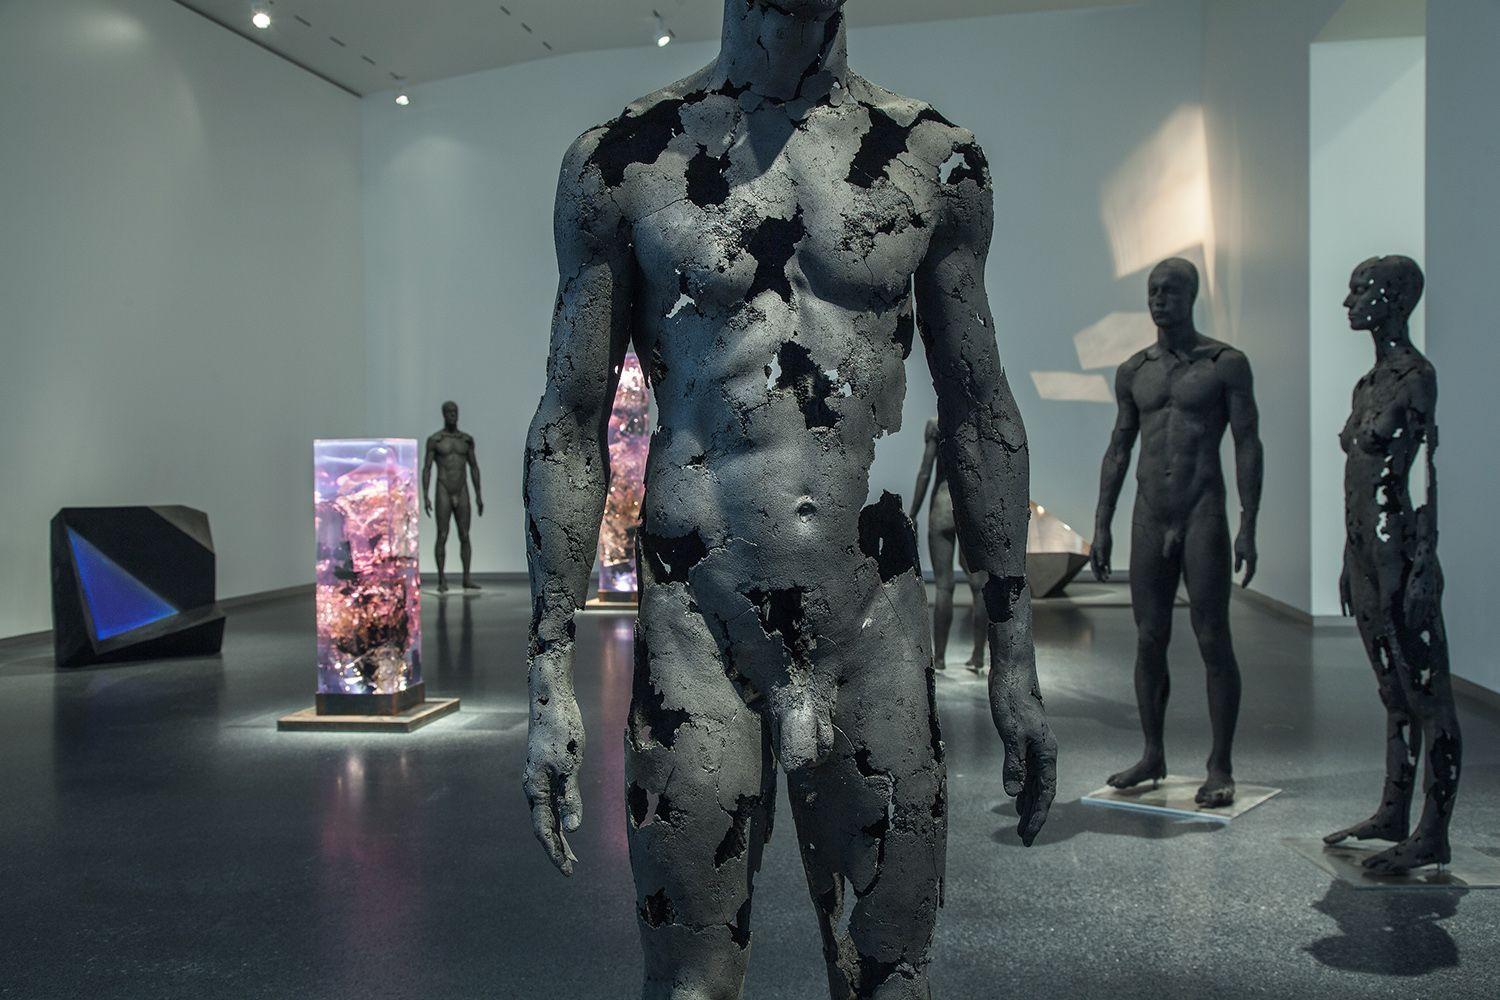 La presencia de la ausencia - Masculino (III) de Tom Price - Escultura de carbón, cuerpo desnudo en venta 2